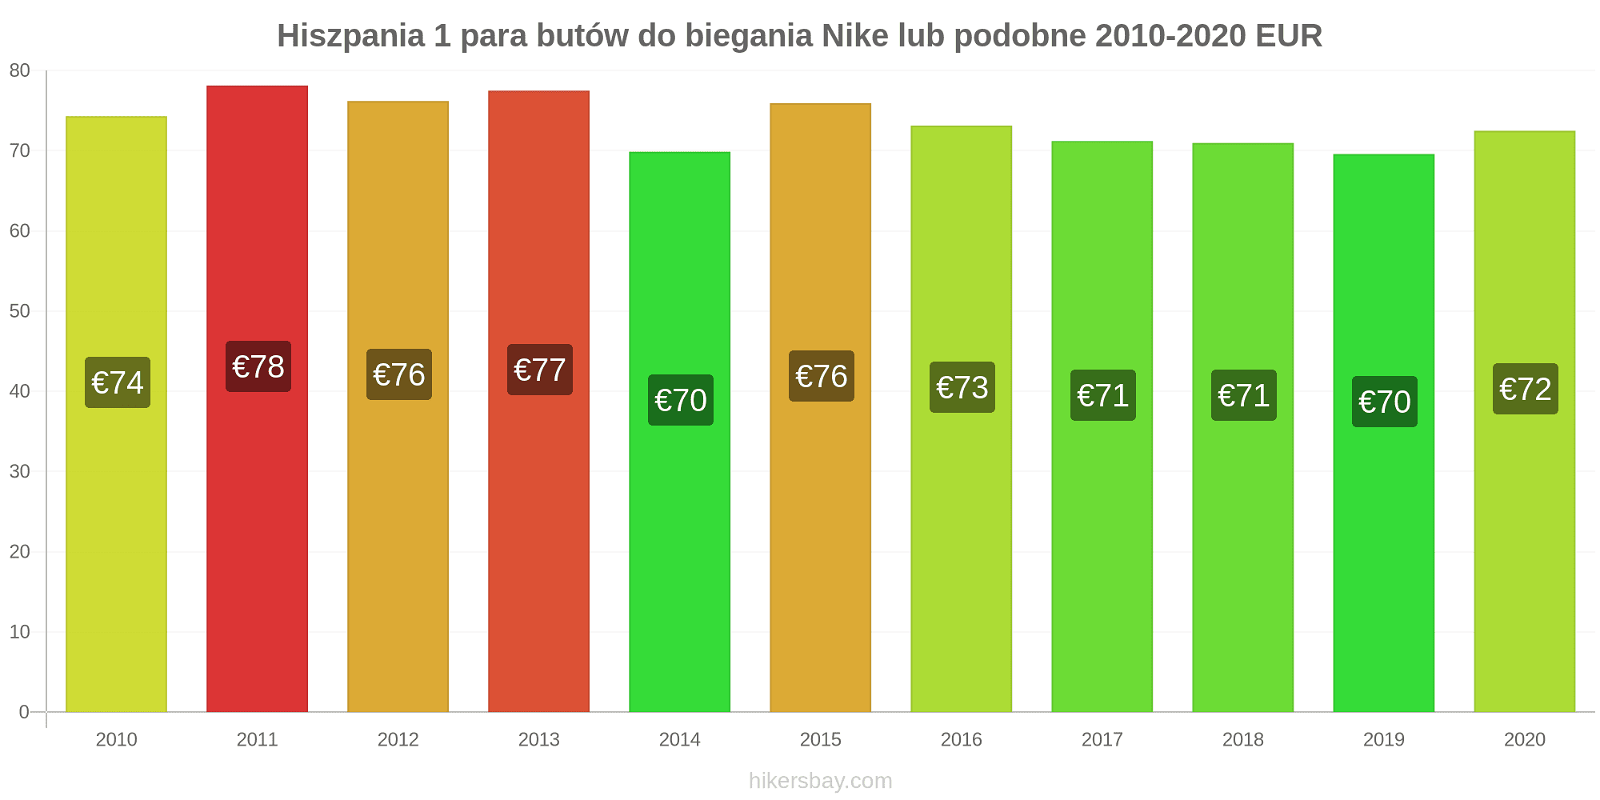 Hiszpania zmiany cen 1 para butów do biegania Nike lub podobne hikersbay.com